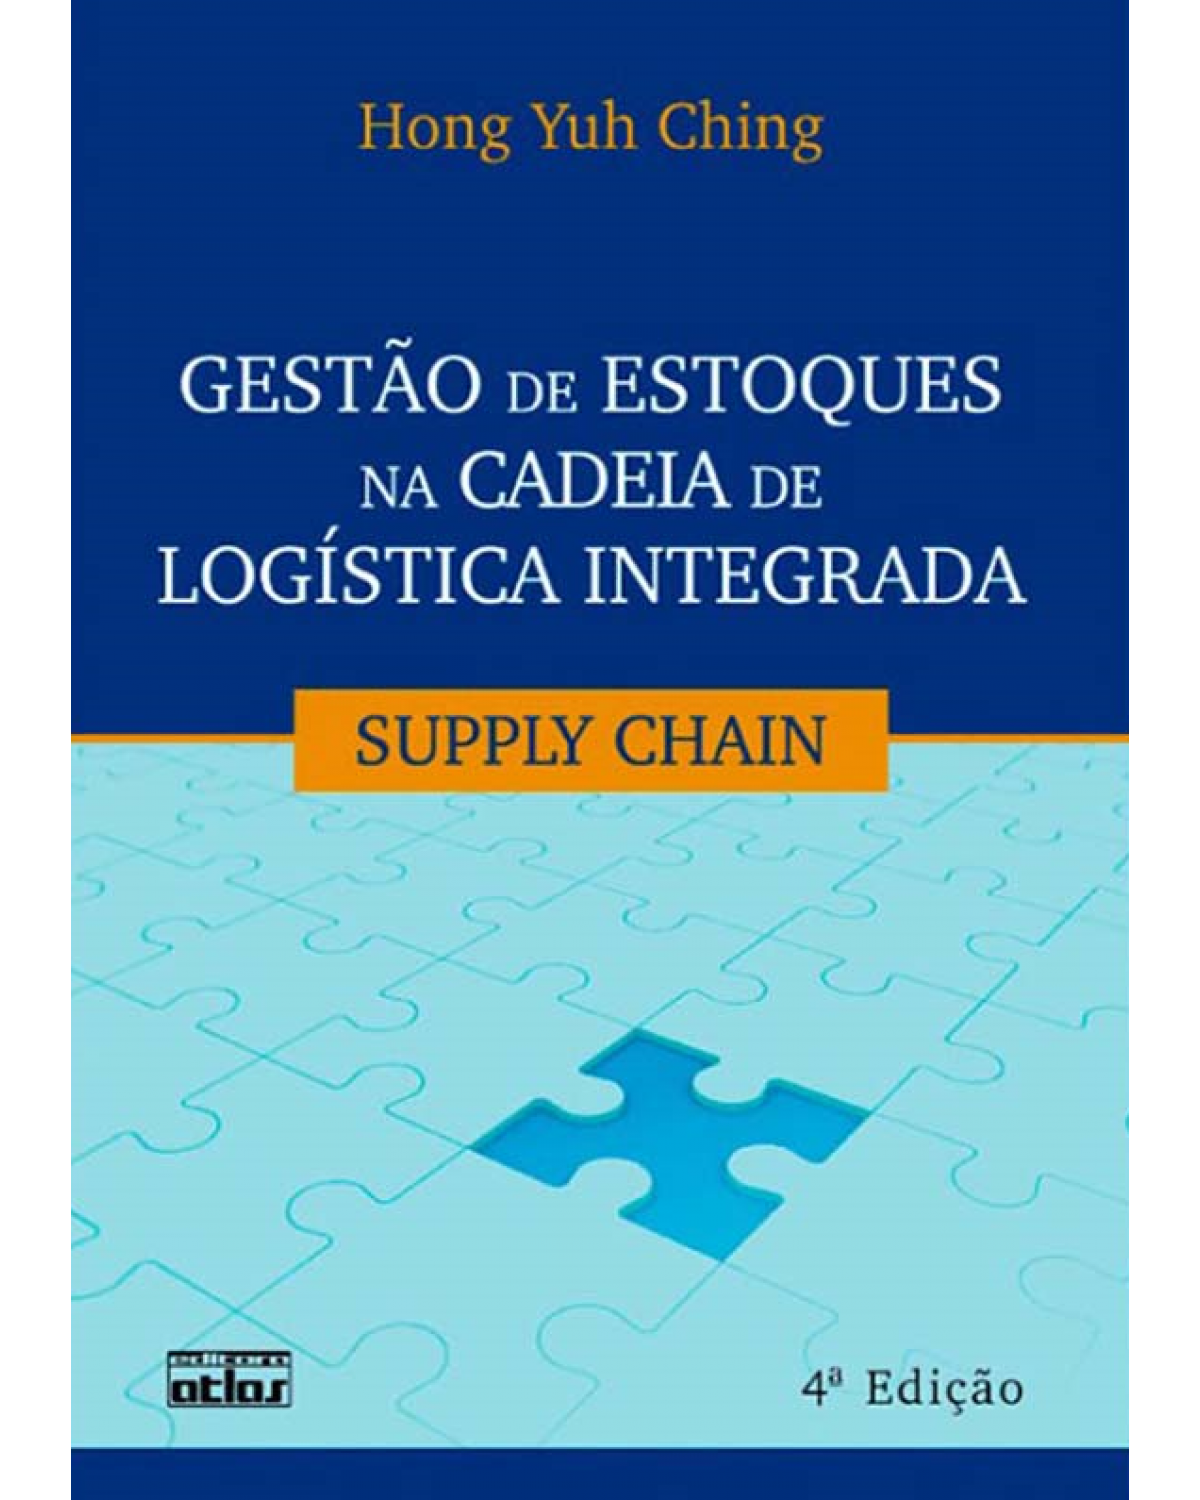 Gestão de estoques na cadeia de logística integrada - Supply chain - 4ª Edição | 2010